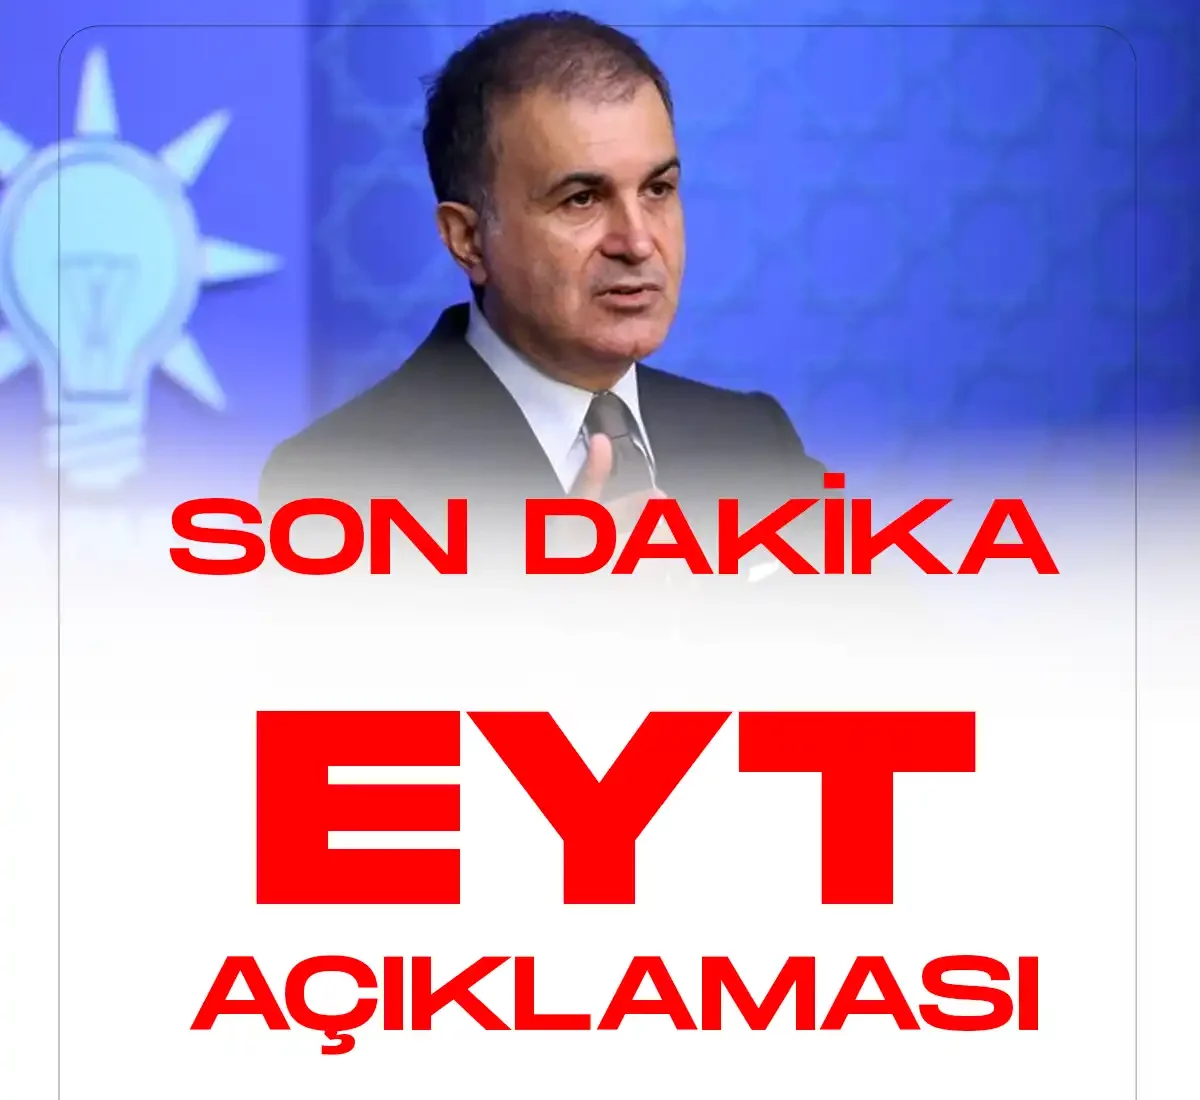 AK Partiden EYT konusunda son dakika açıklaması geldi.